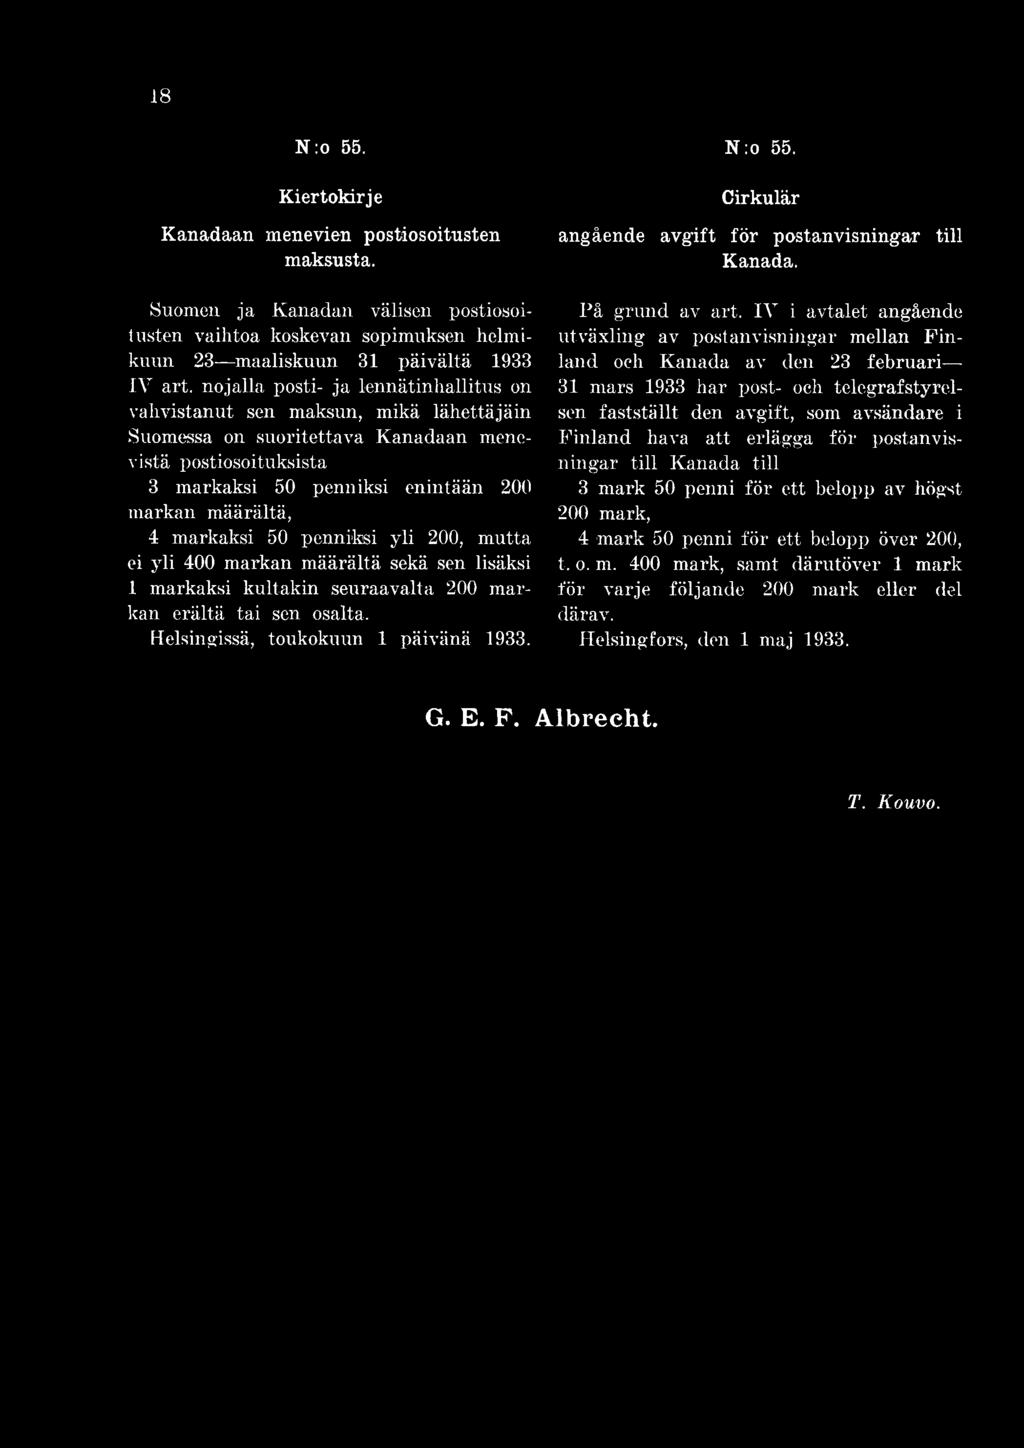 IV i avtalet angående utväxling av postanvisningar mellan Finland och Kanada av den 23 februari 31 mars 1933 har post- och telegrafstyrelsen fastställt den avgift, som avsändare i Finland